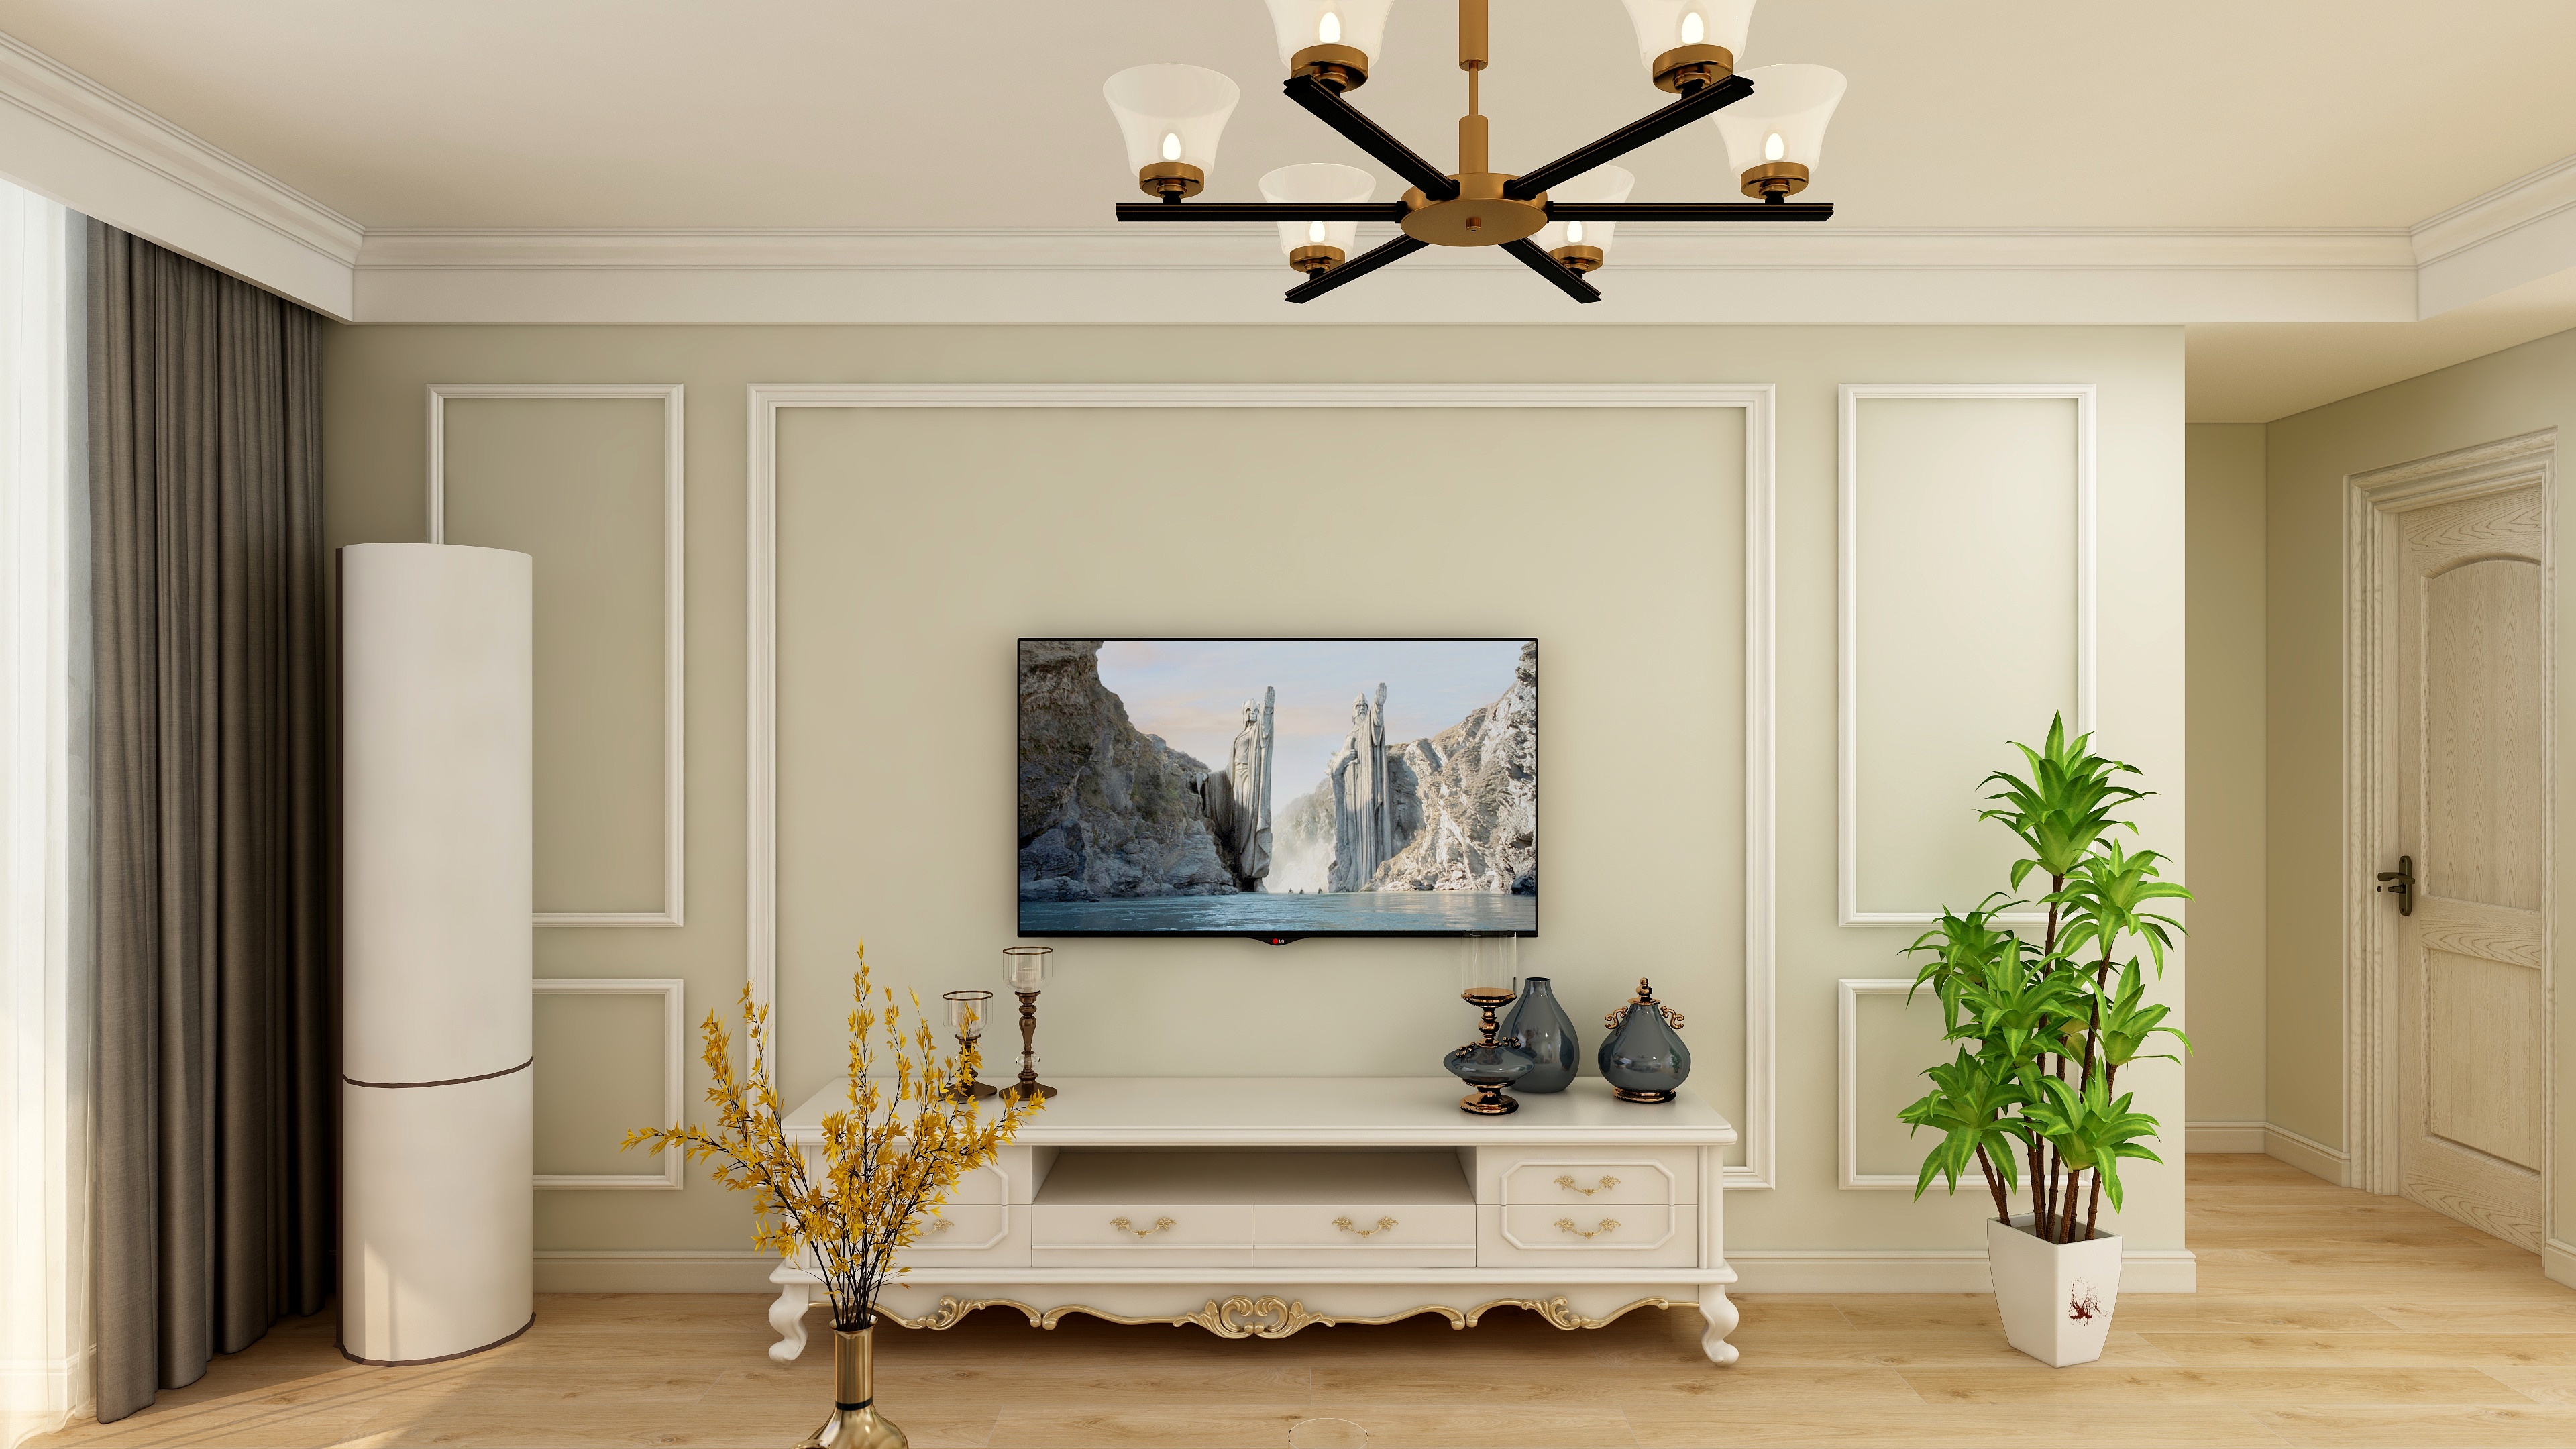 客厅电视墙选择了对称的造型,用石膏线勾勒,简洁